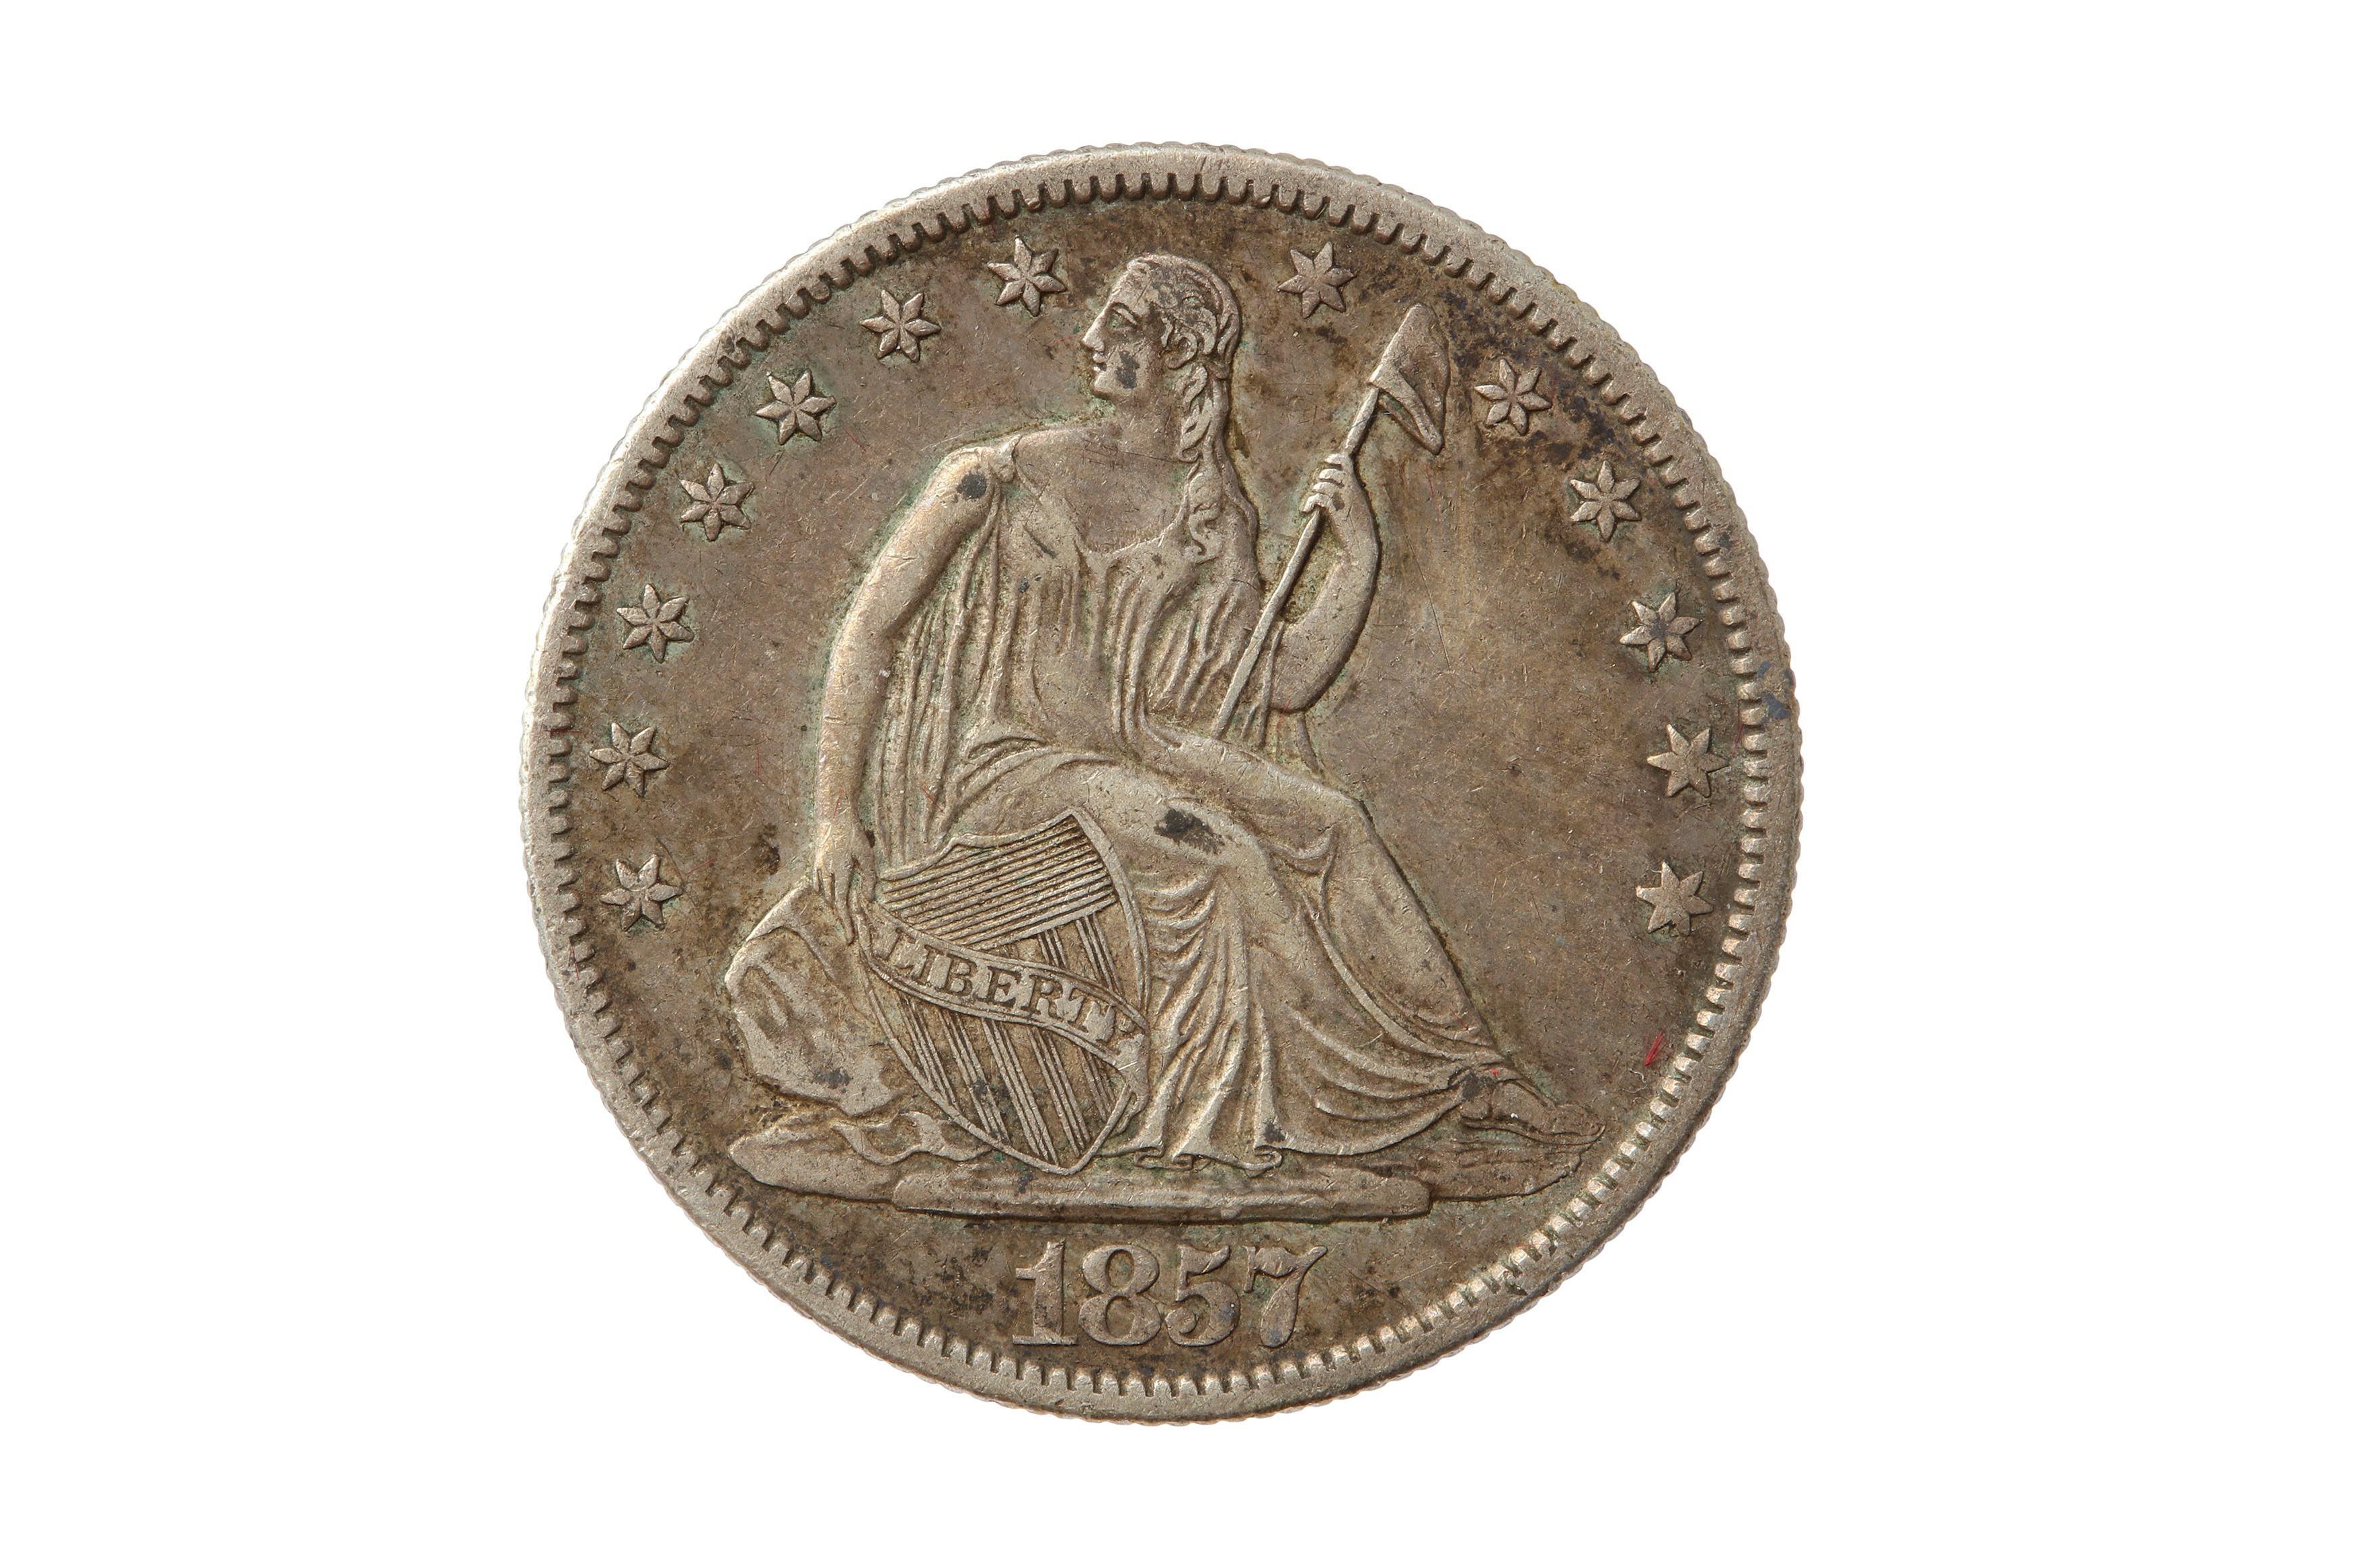 USA, 1857-O 50 CENTS/HALF DOLLAR.